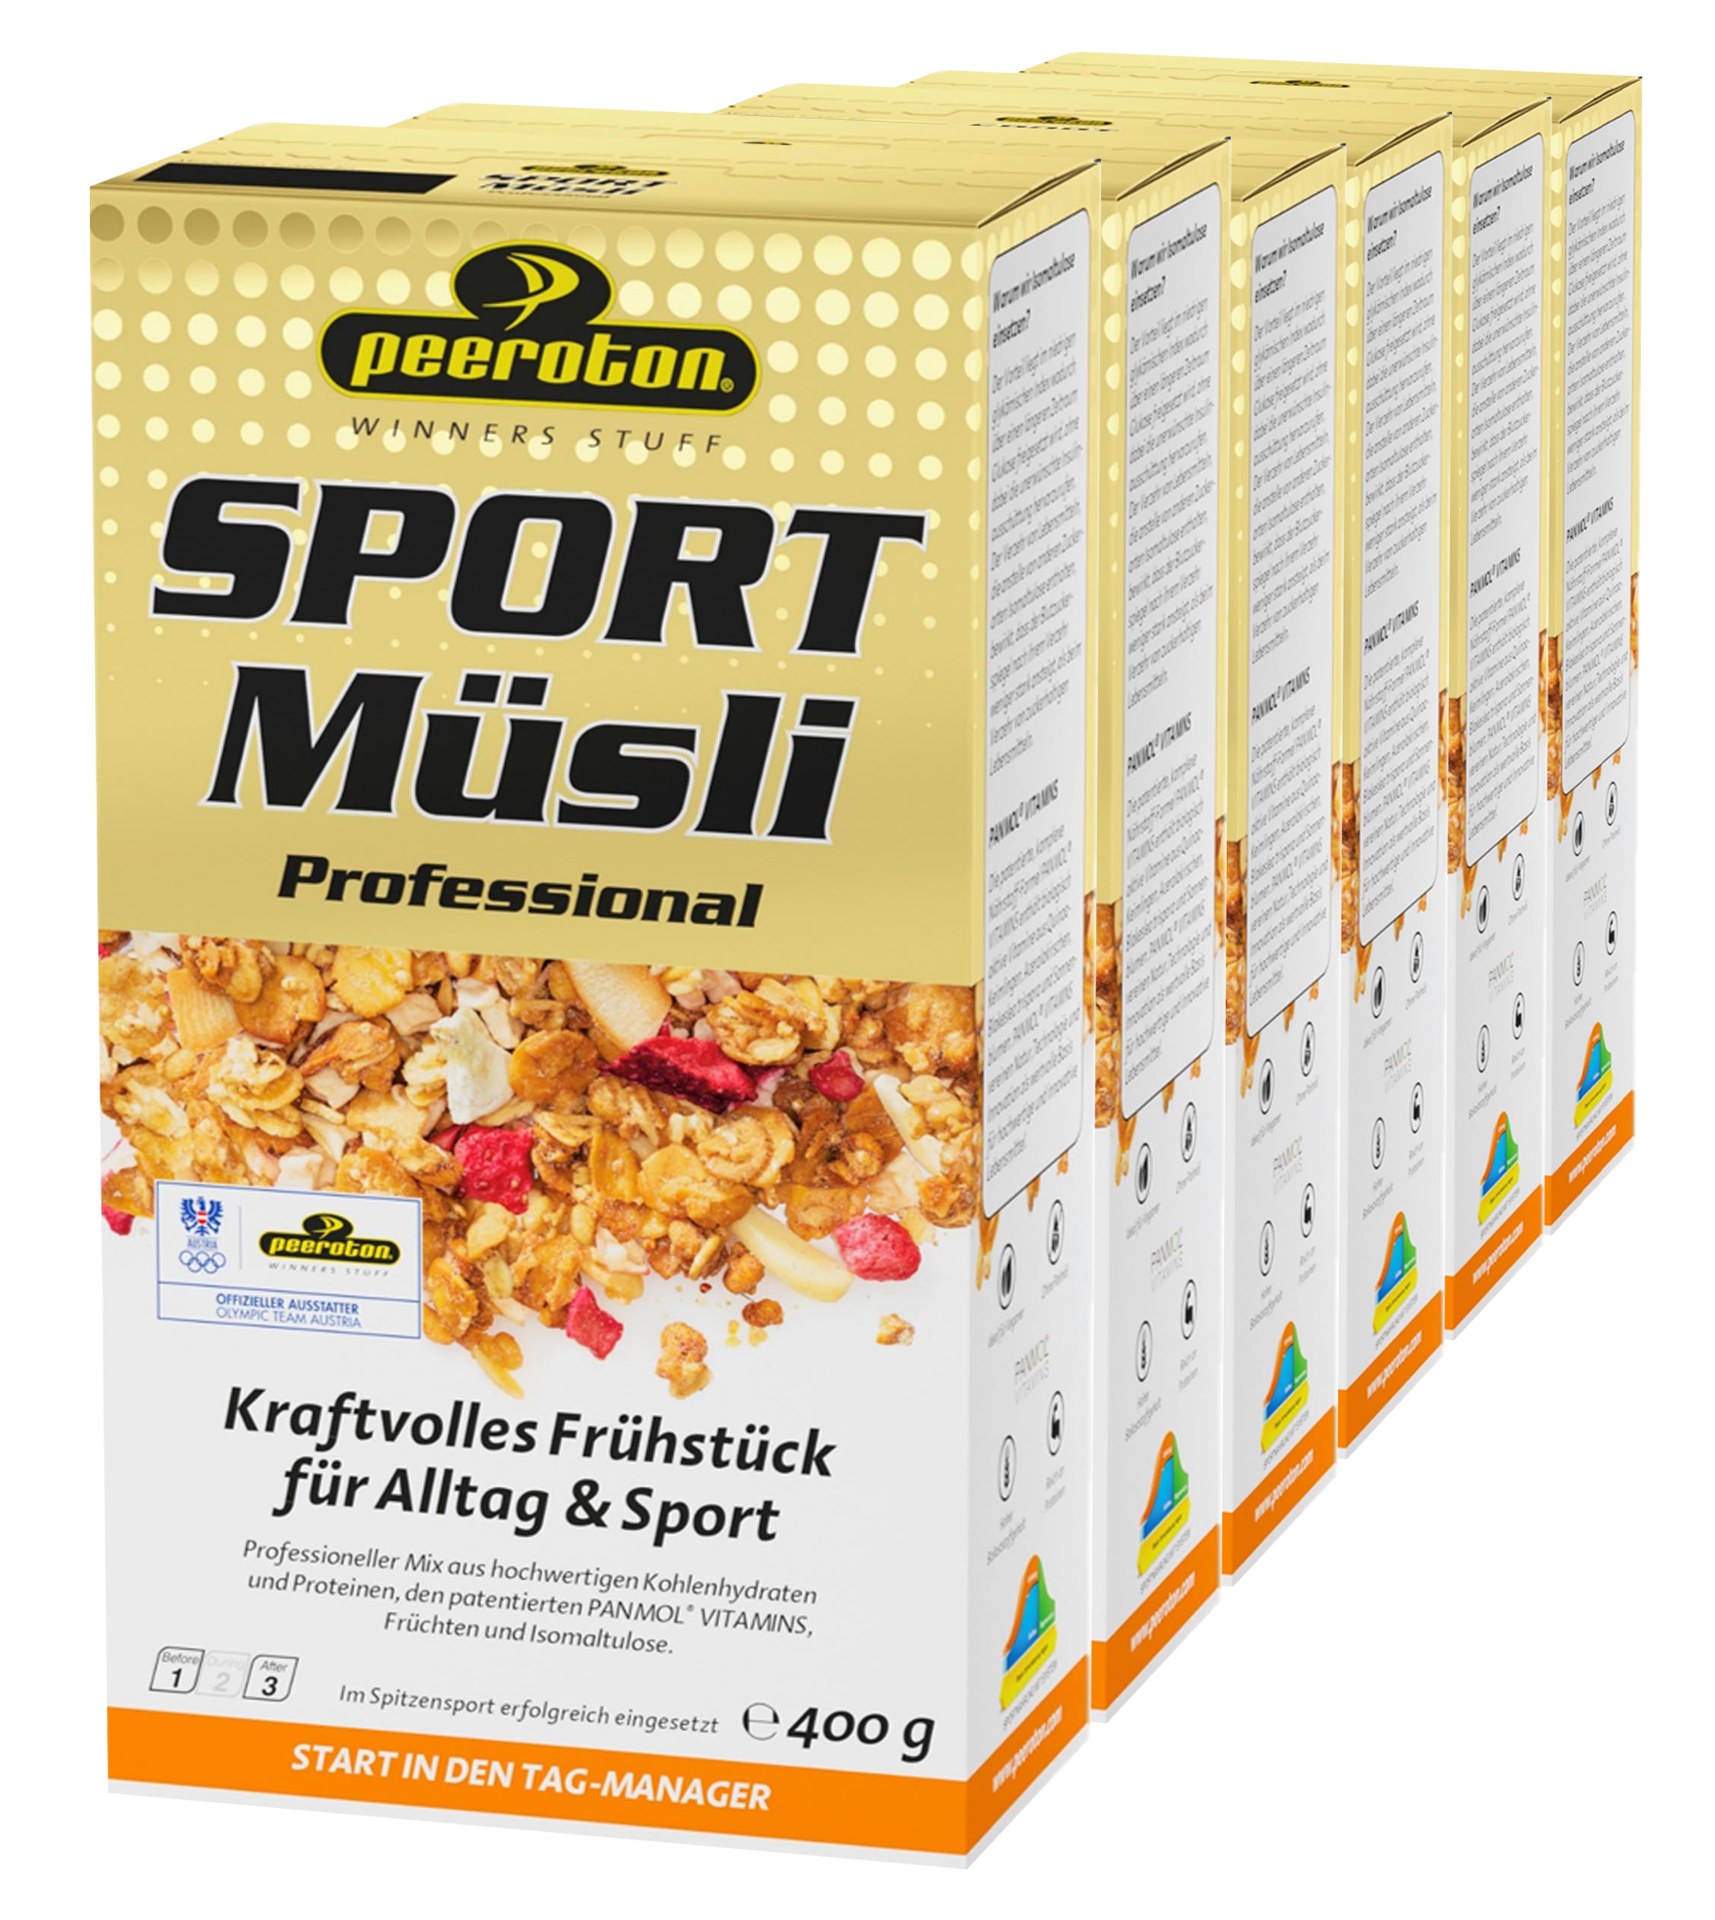 SPORT Protein Müsli Professional - 6er Vorteilspack